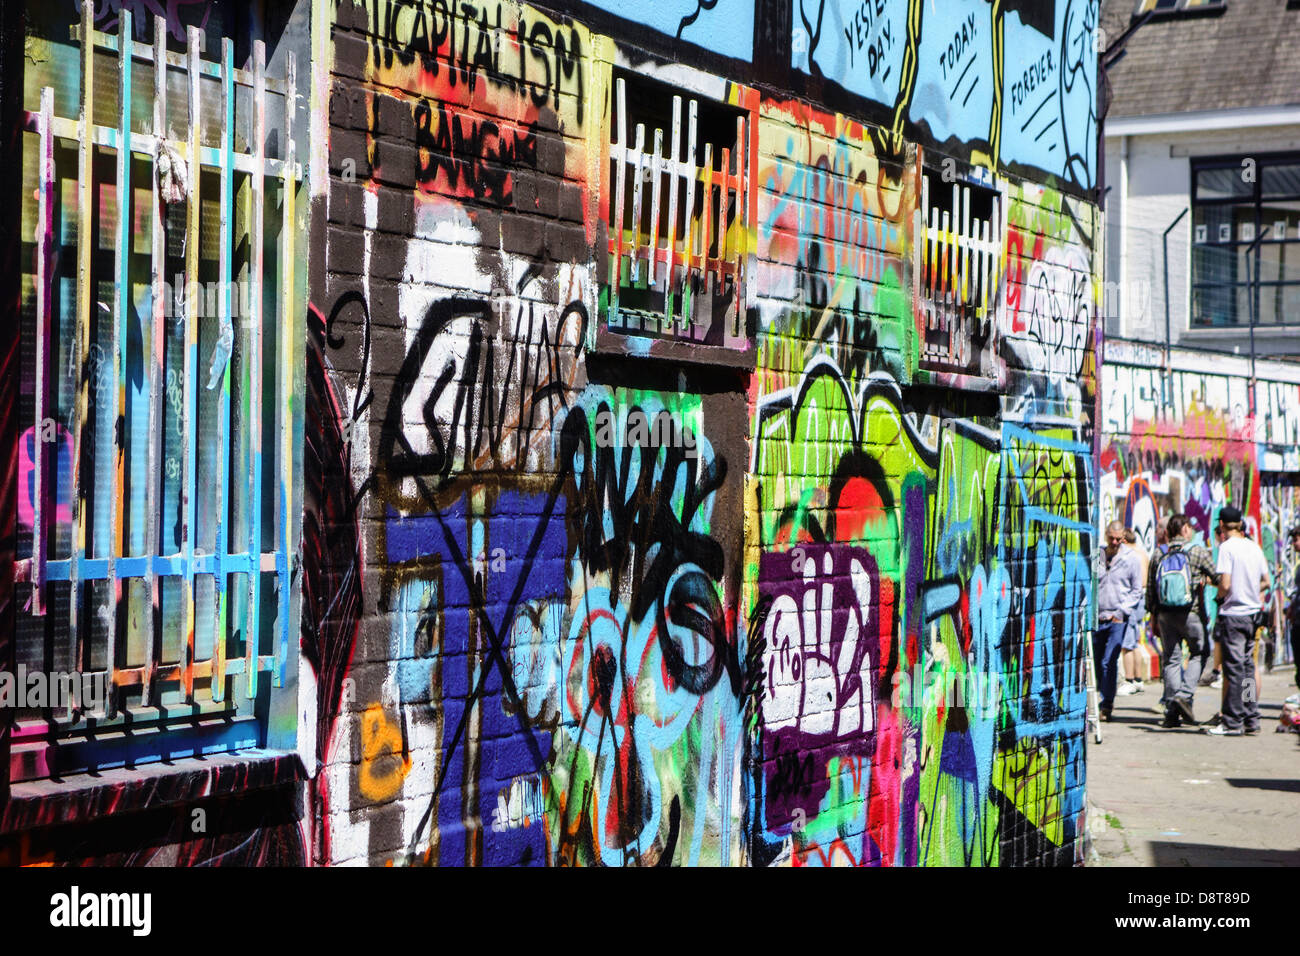 Les jeunes dans la pulvérisation allée sur le mur de graffitis colorés en bâtiment ville Banque D'Images